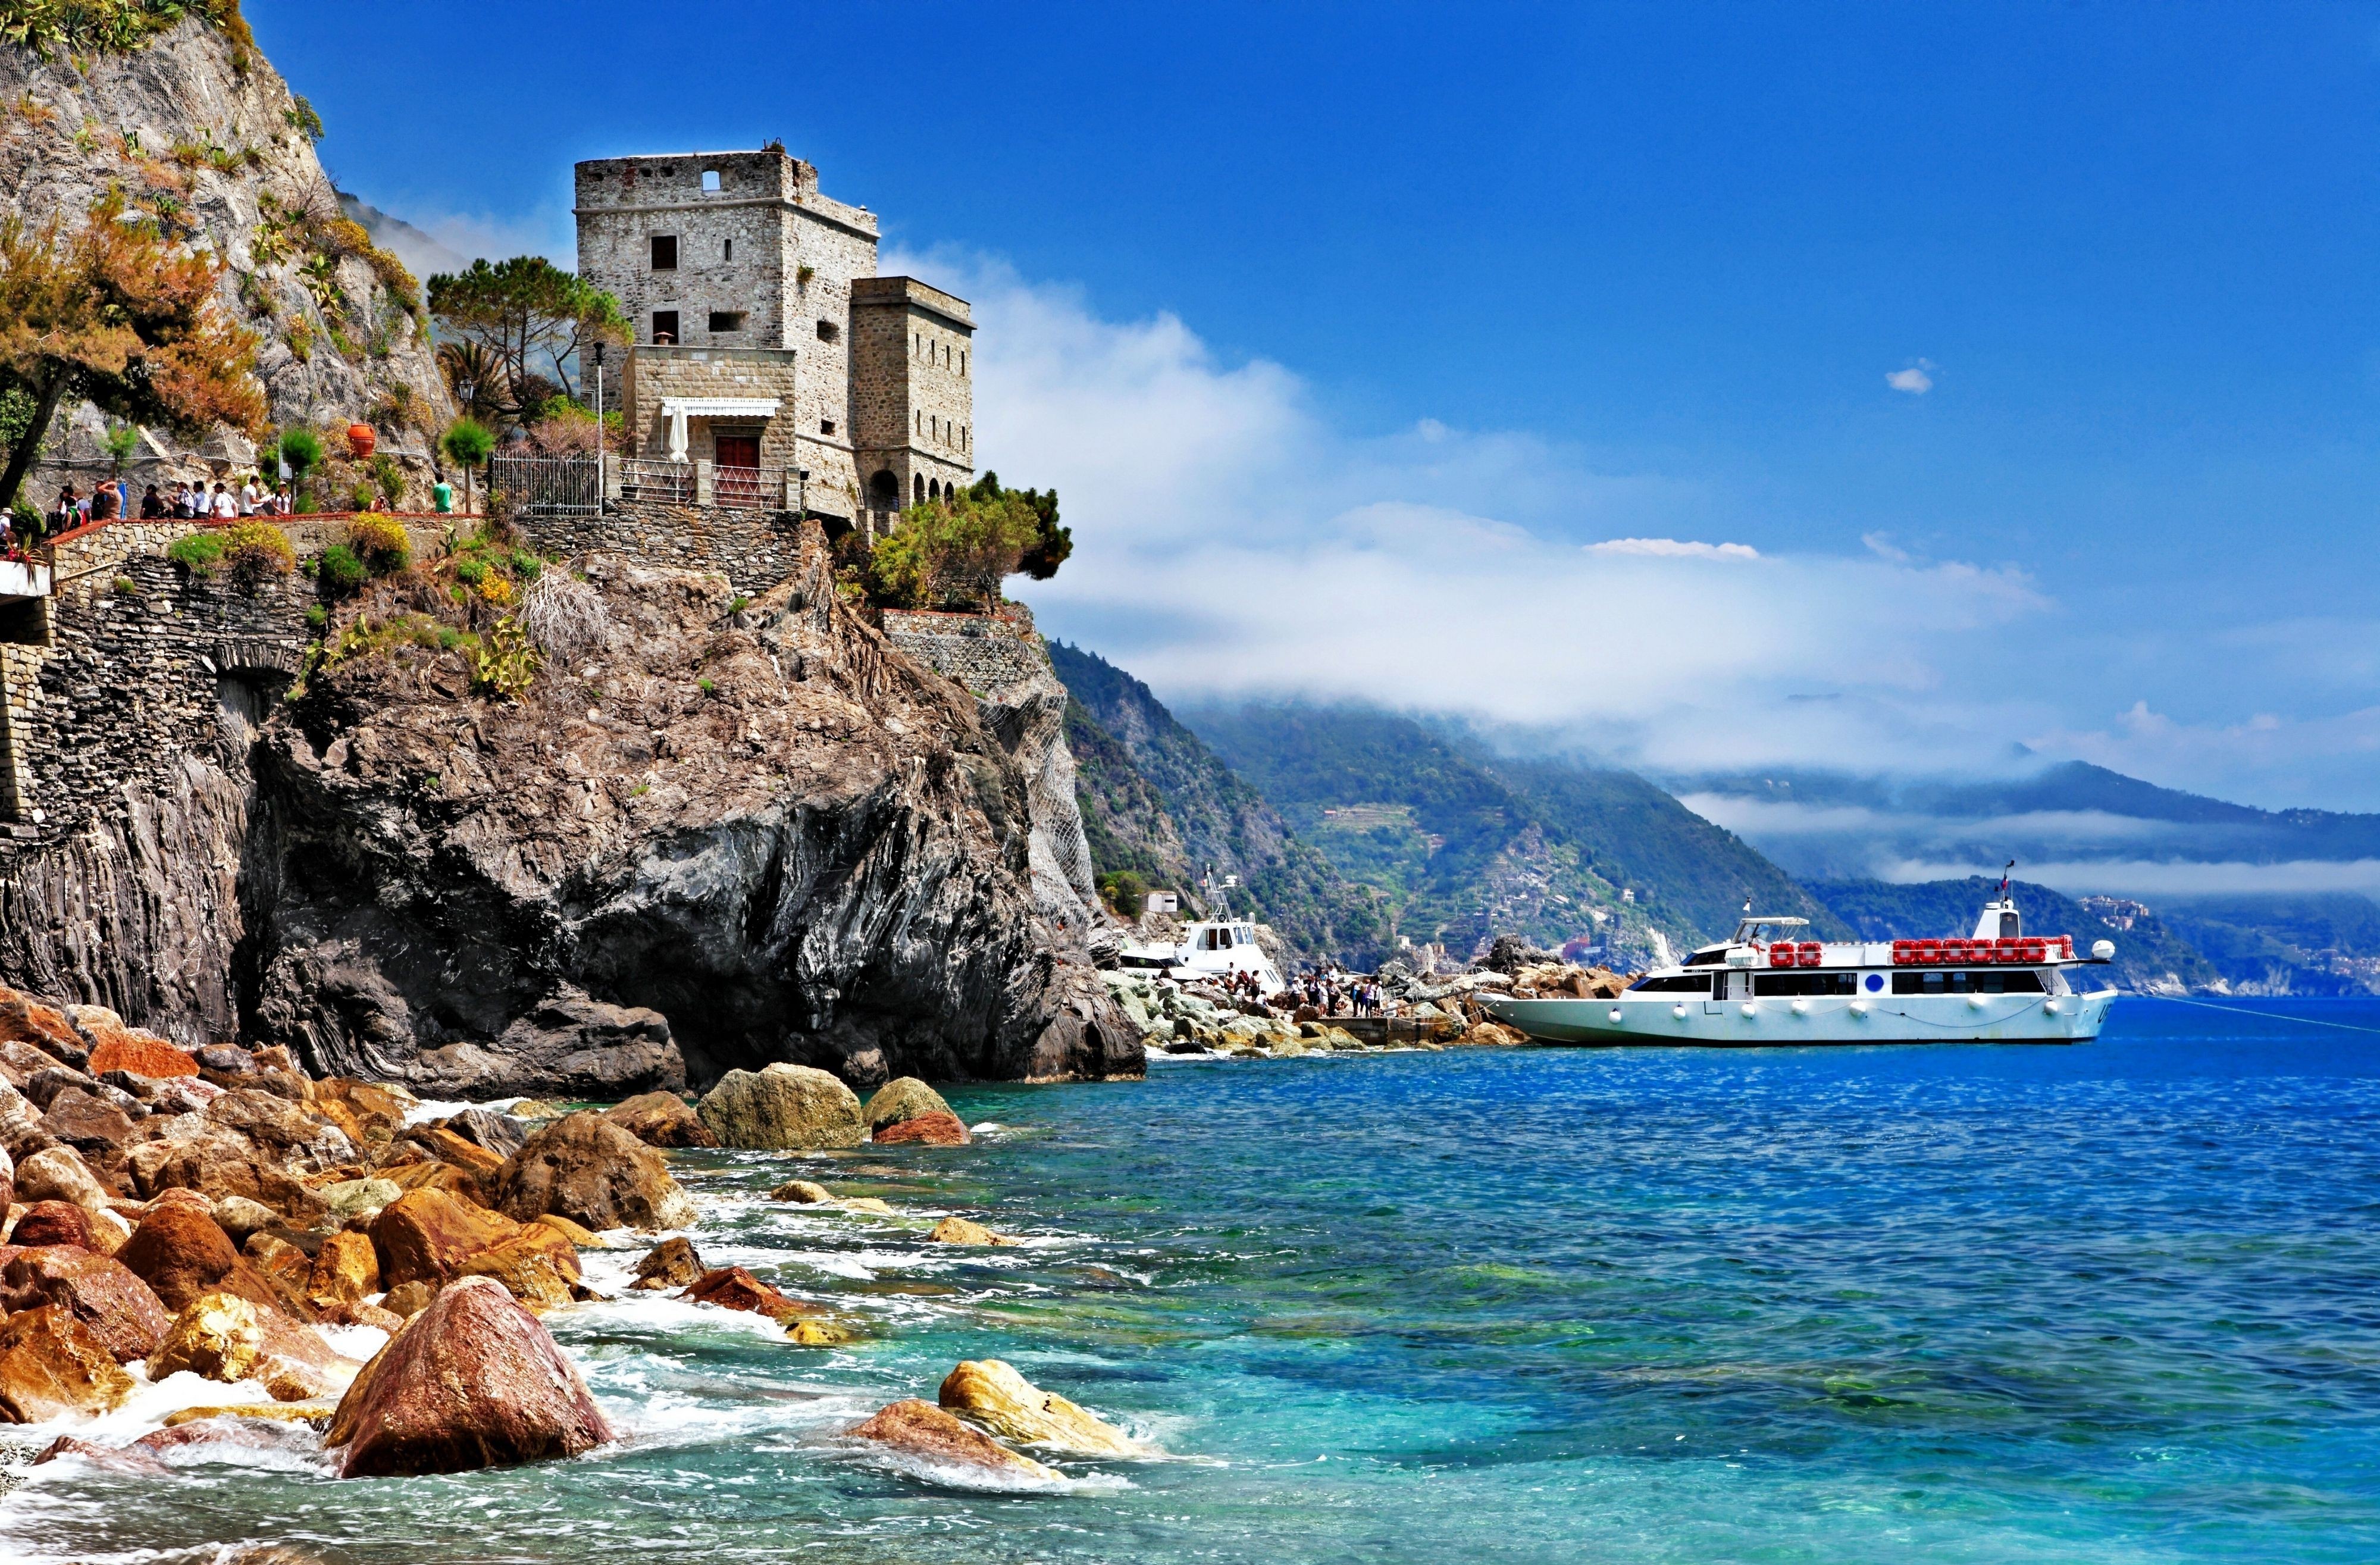 Man Made Monterosso al Mare HD Wallpaper | Background Image